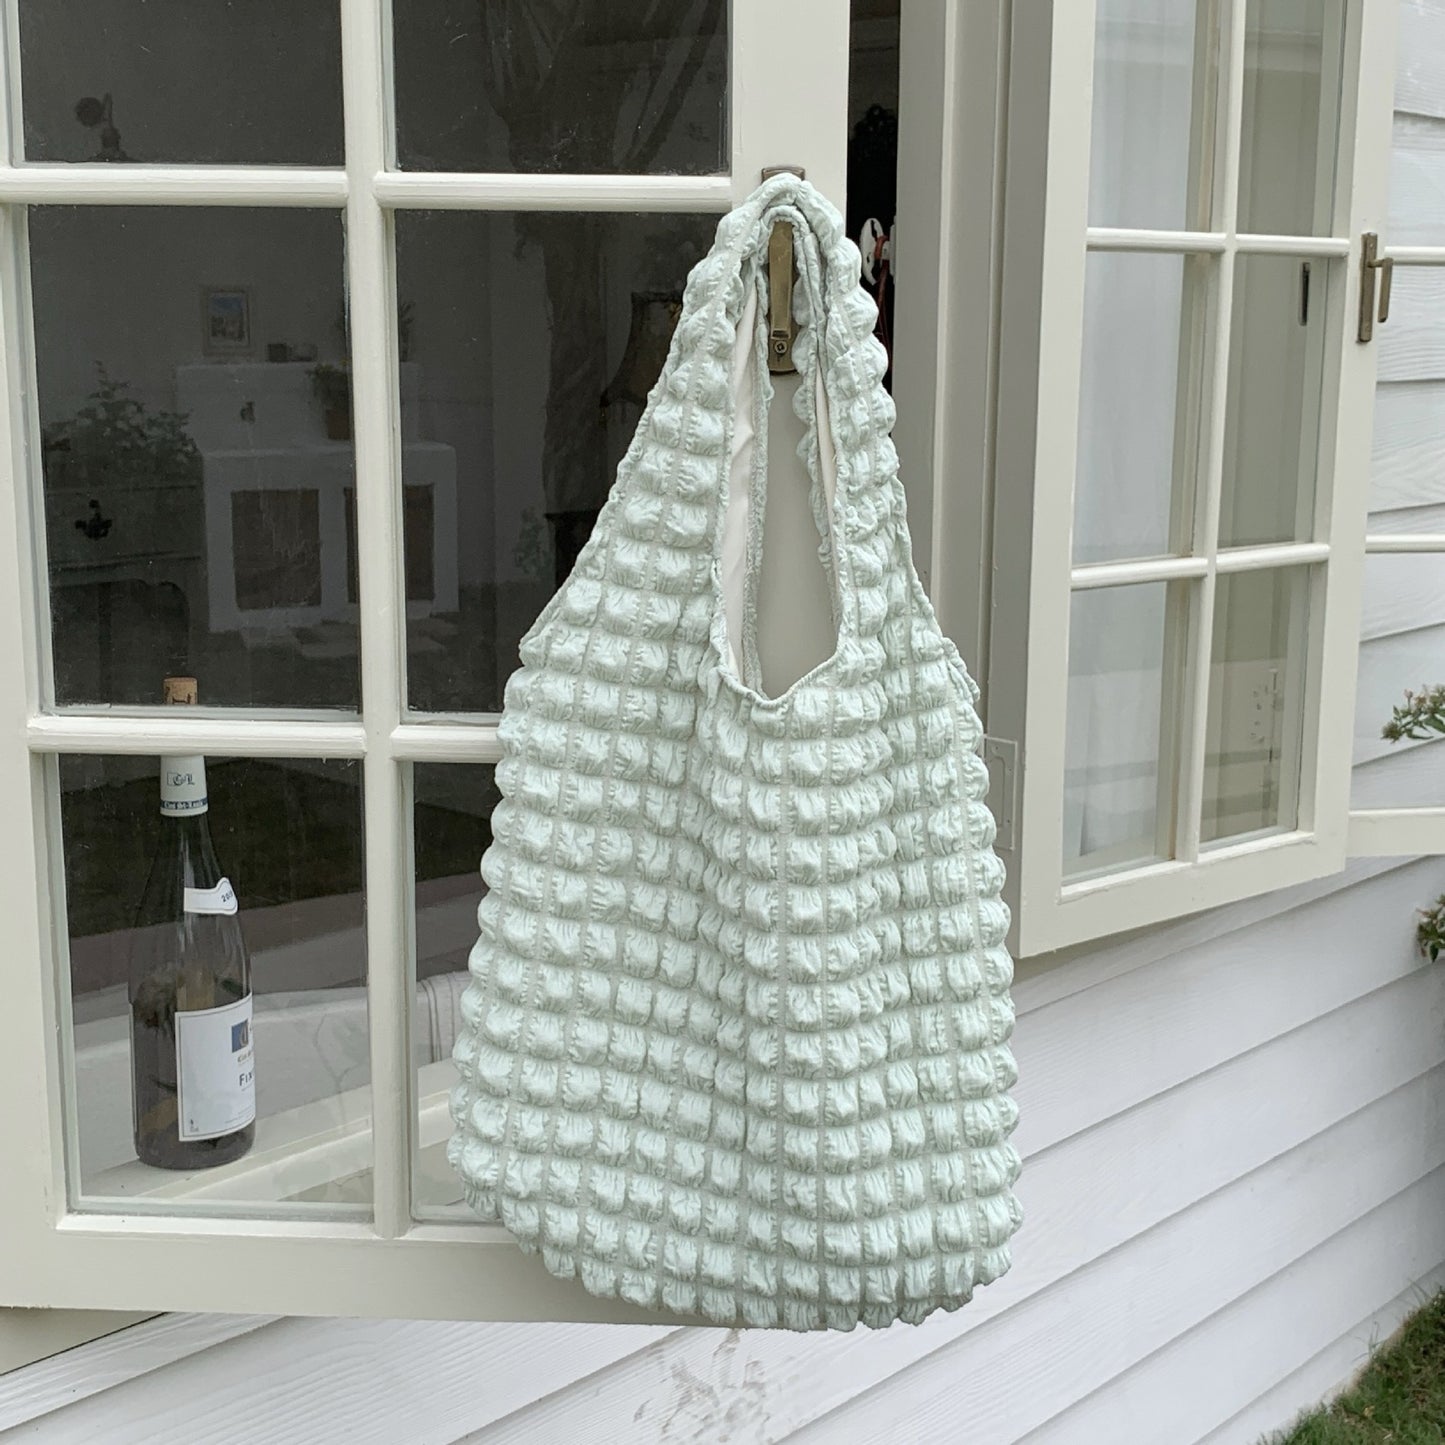 Bubble tote bag